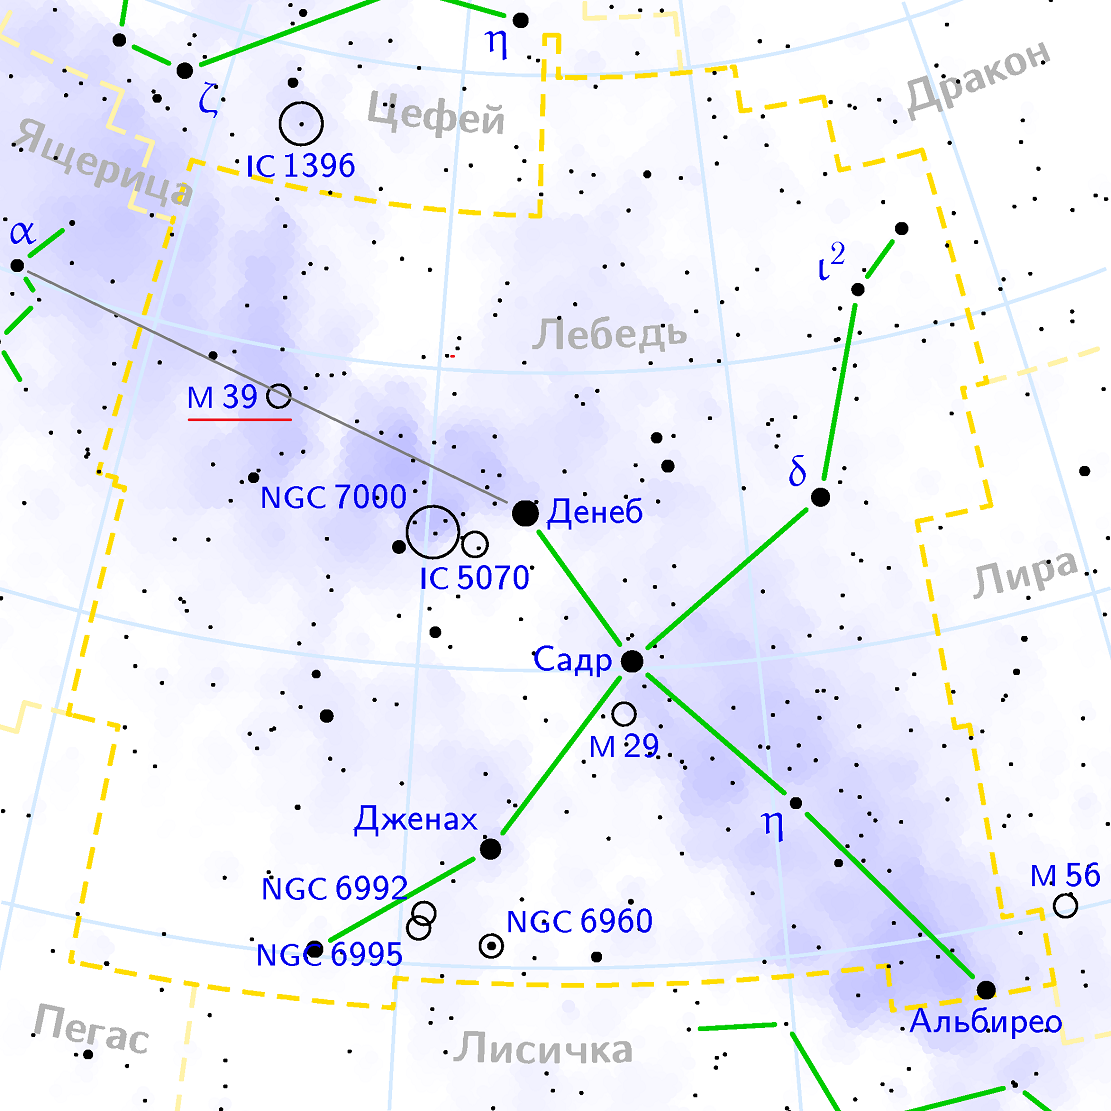 Положение галактического скопления M39 в созвездии Лебедь